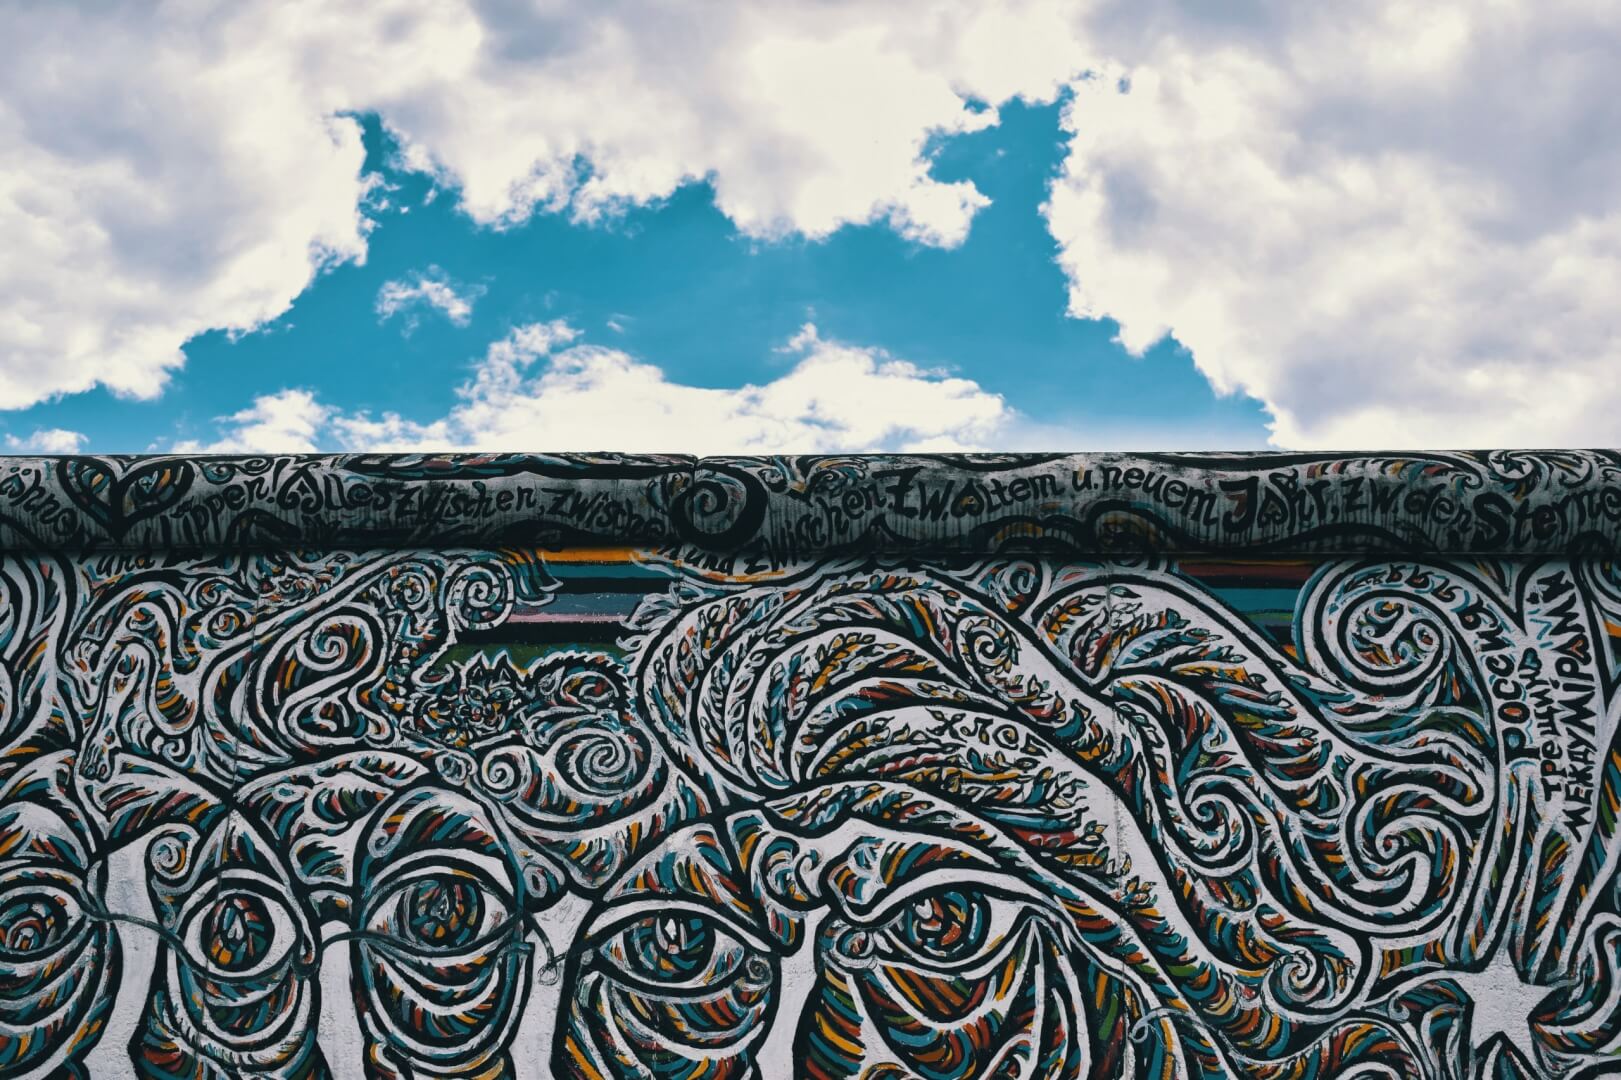 O que fazer em berlim: conhecer o Muro de Berlim